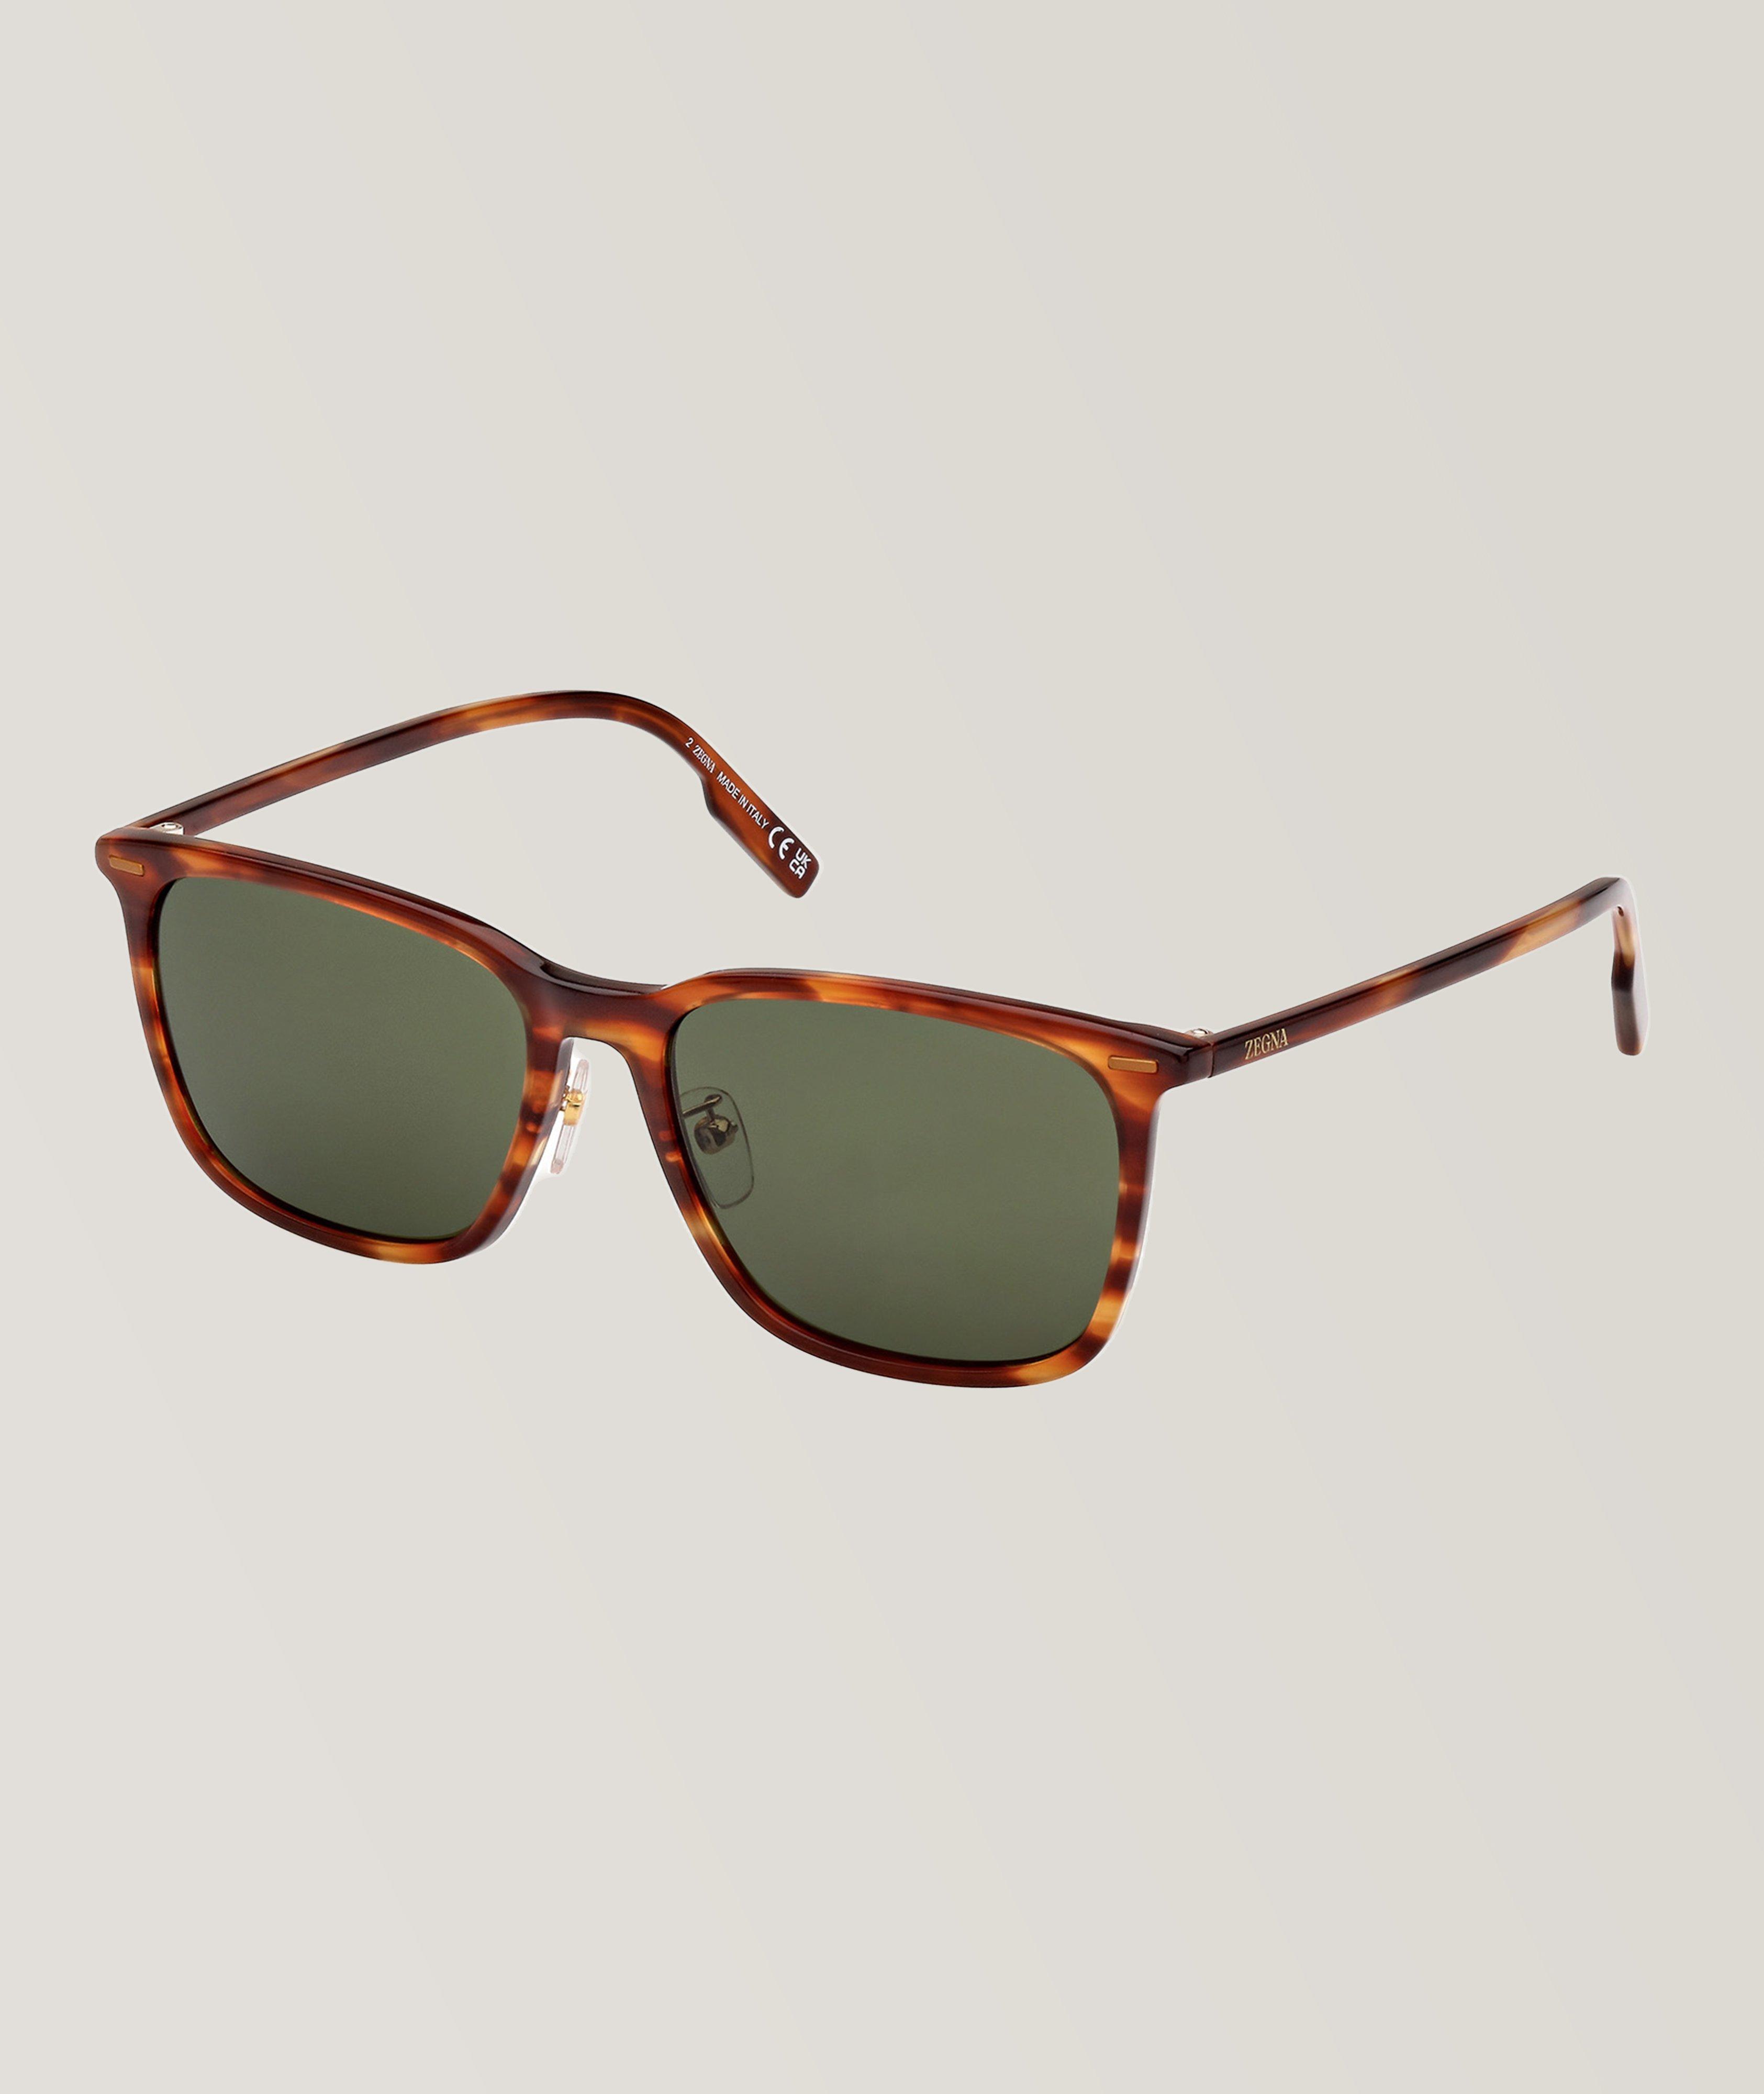 Zegna Full-Rimmed Rectangular Frame Sunglasses